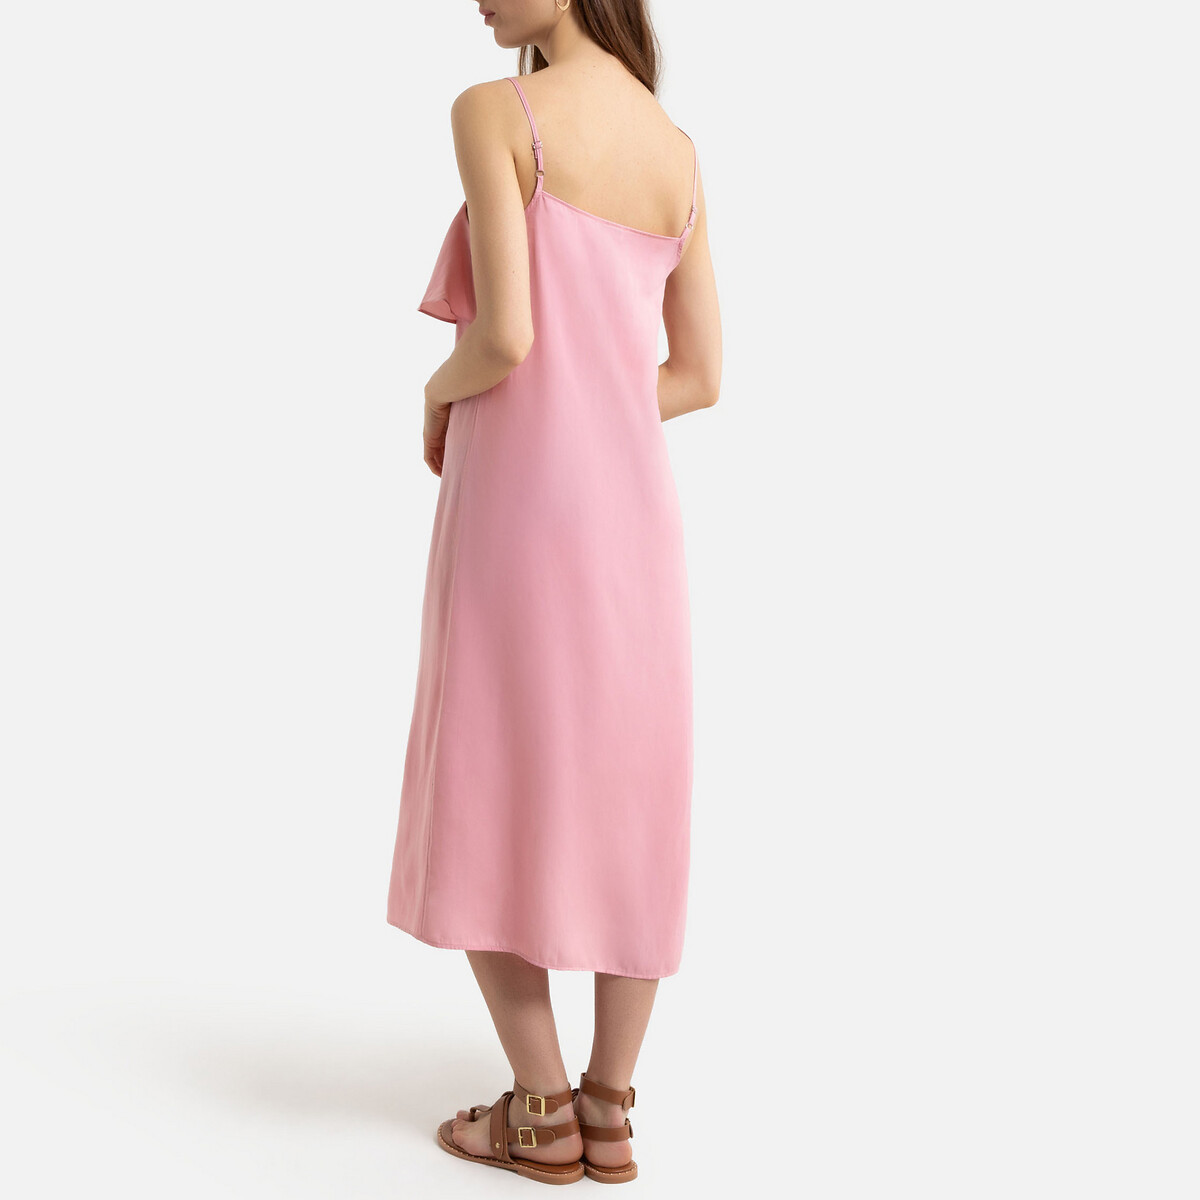 Платье La Redoute Длинное на тонких бретелях с воланом 34 (FR) - 40 (RUS) розовый, размер 34 (FR) - 40 (RUS) Длинное на тонких бретелях с воланом 34 (FR) - 40 (RUS) розовый - фото 3